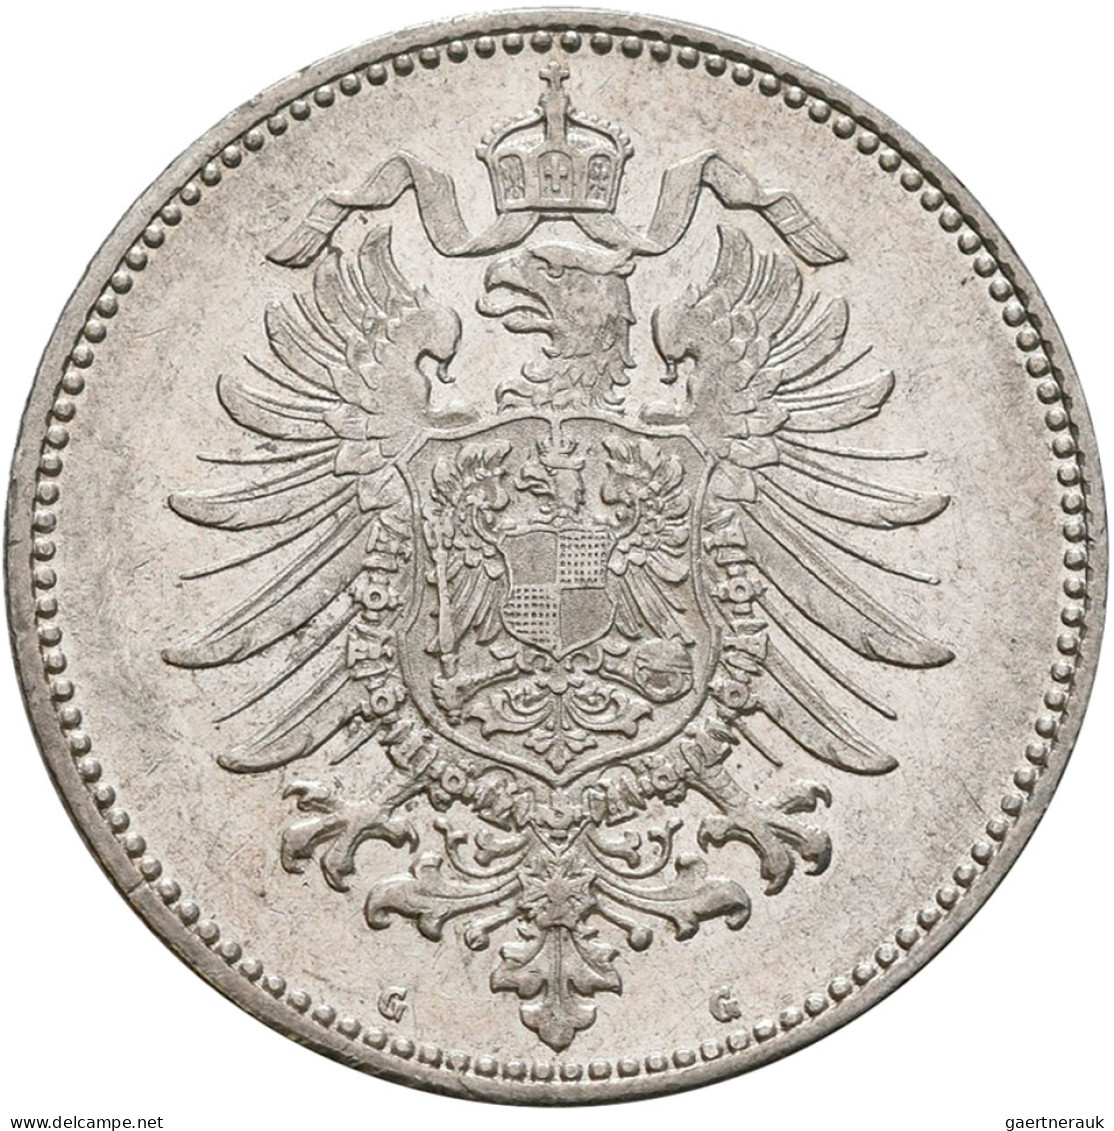 Umlaufmünzen 1 Pf. - 1 Mark: 1 Mark 1882 G, Jaeger 9. Besserer Jahrgang, Gute Er - Taler & Doppeltaler